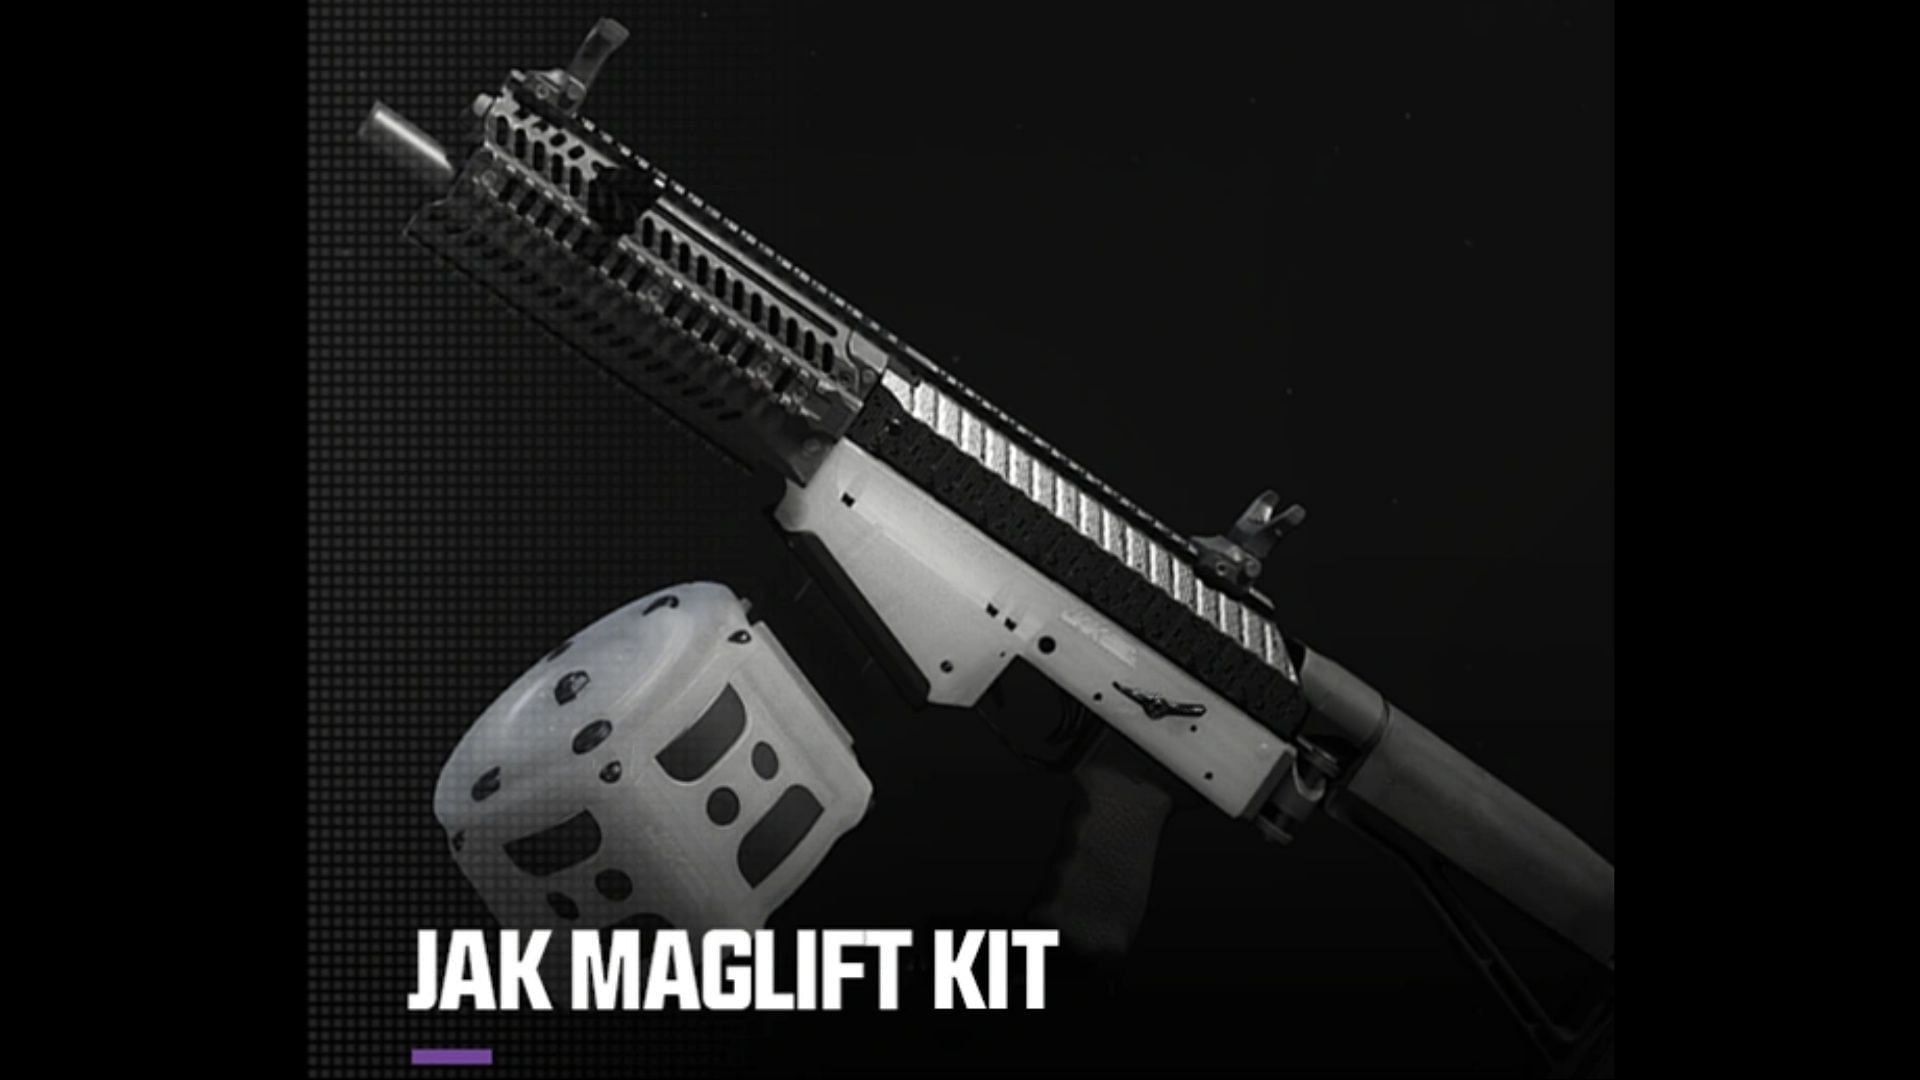 Aftermarket kit for Haymaker Shotgun (Image via Activision)